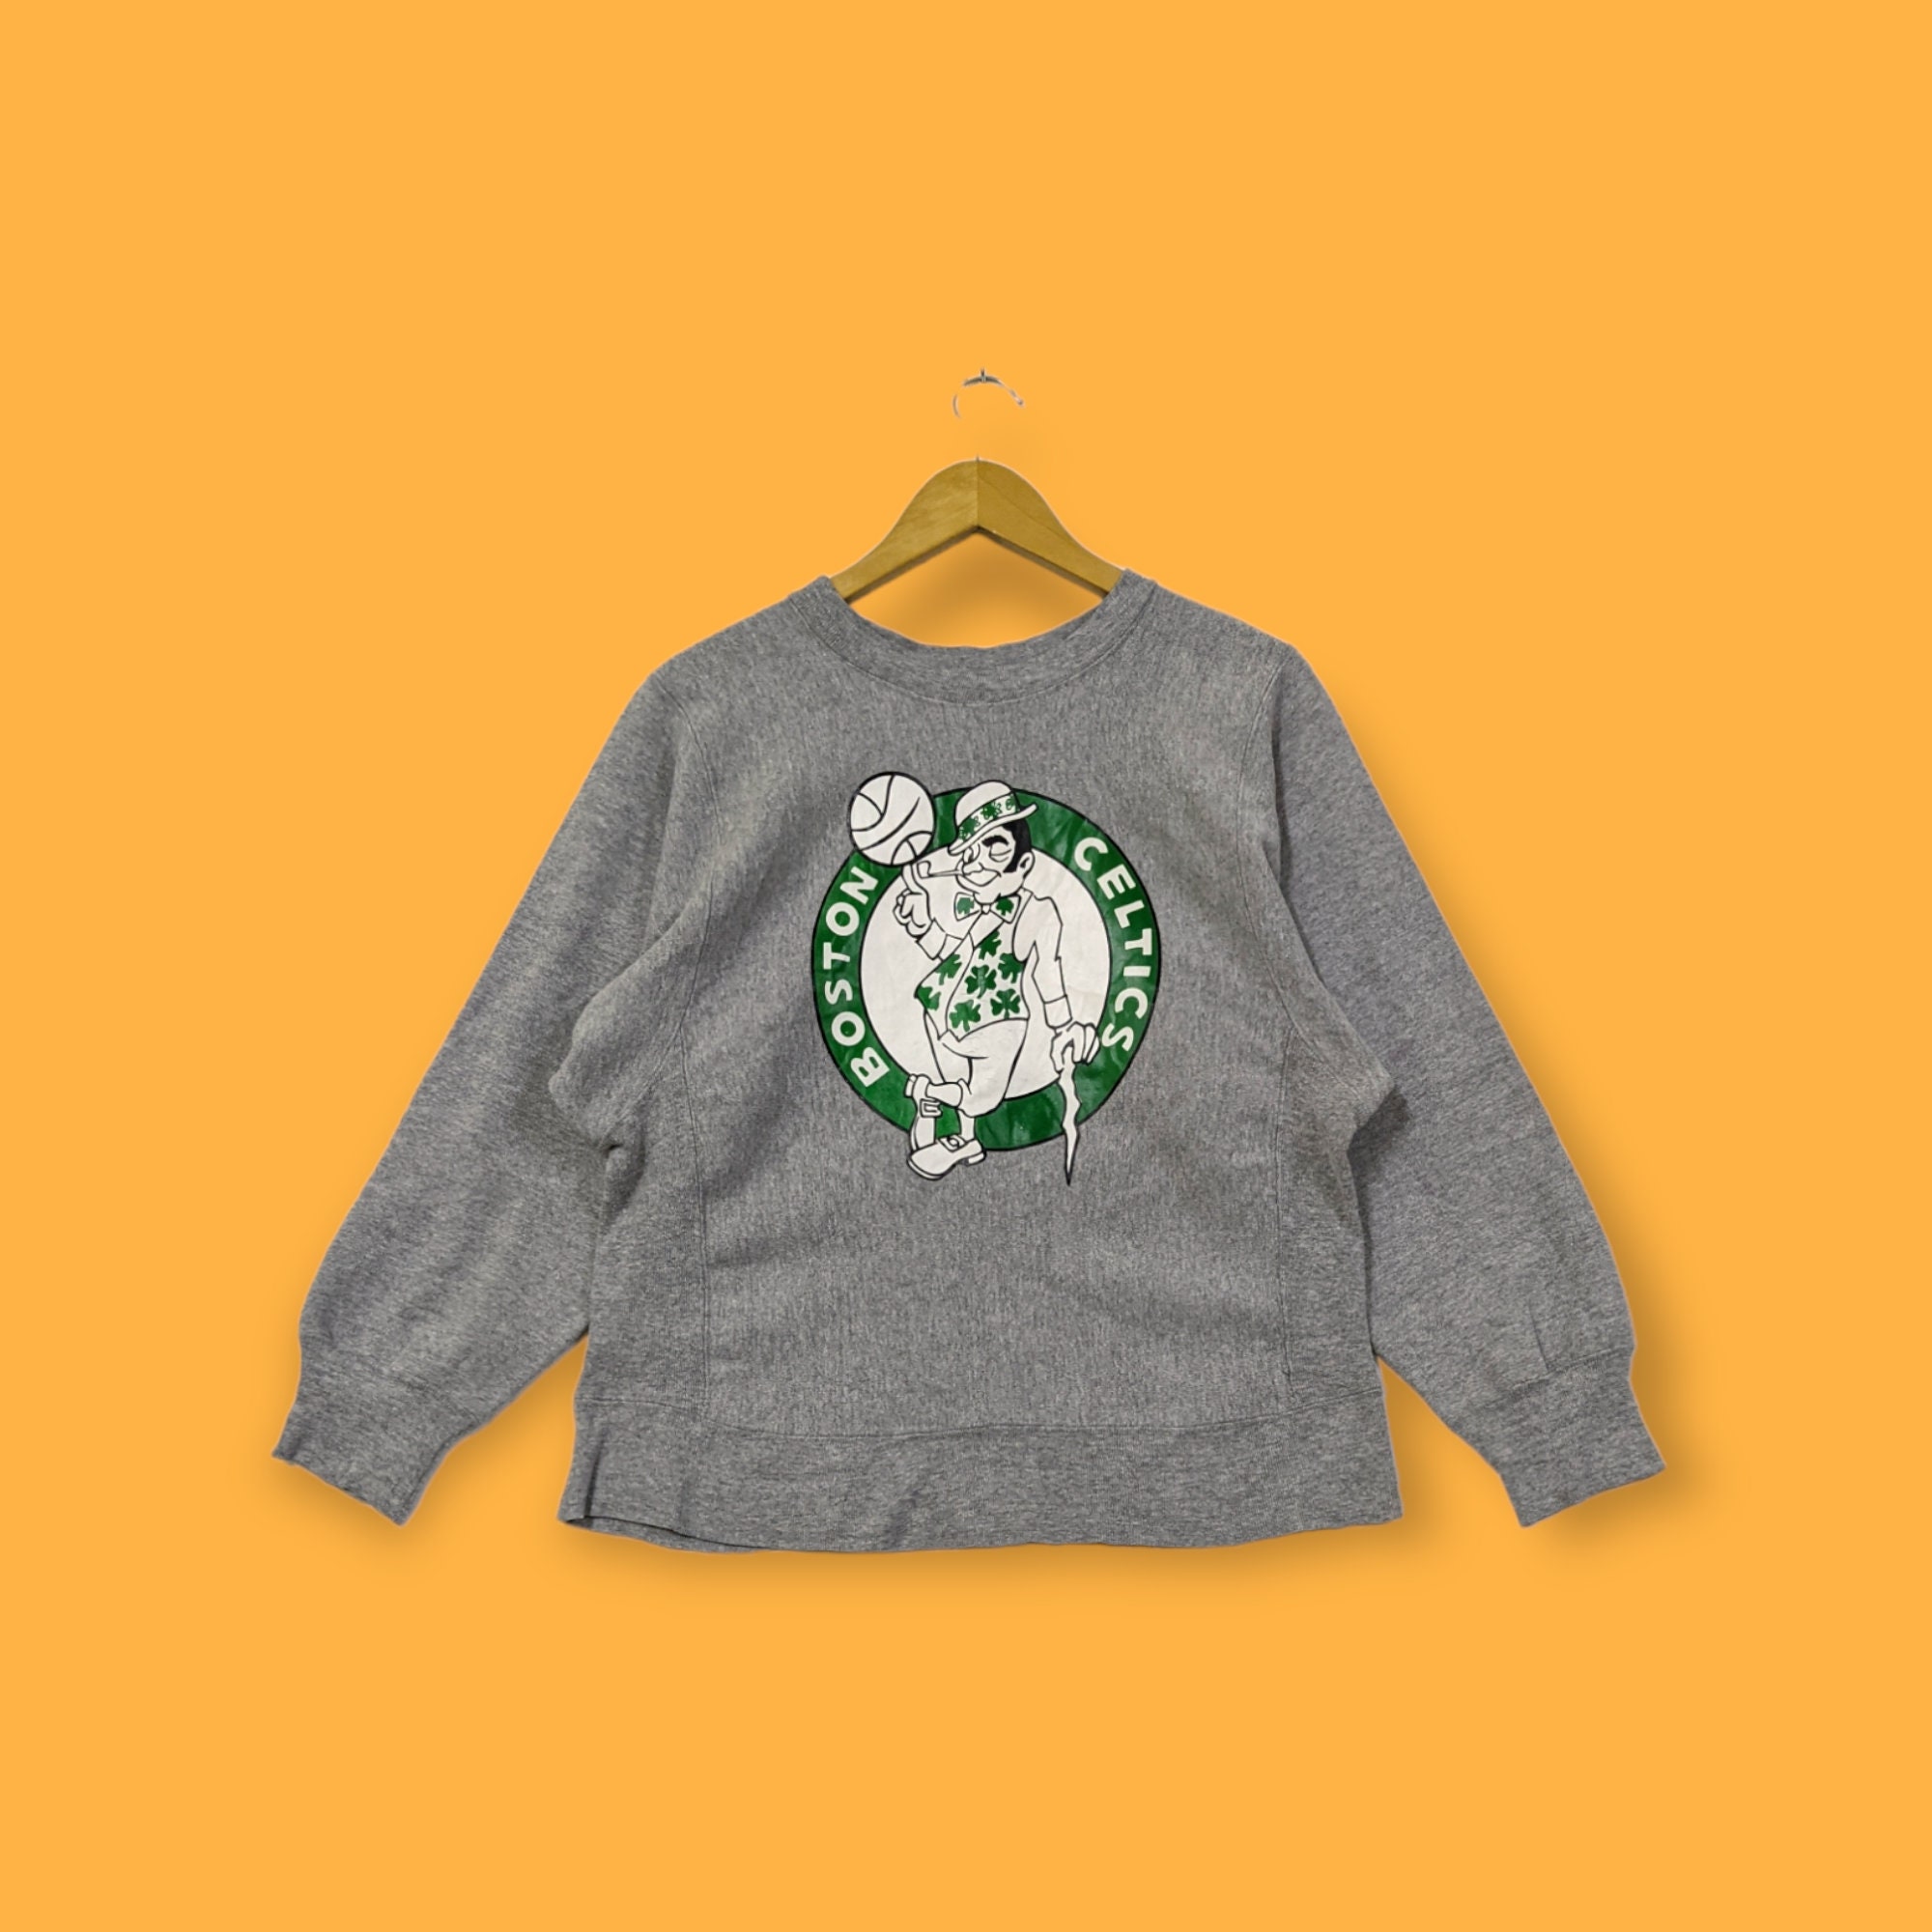 Vintage Embroidered Boston Celtics Sweatshirt